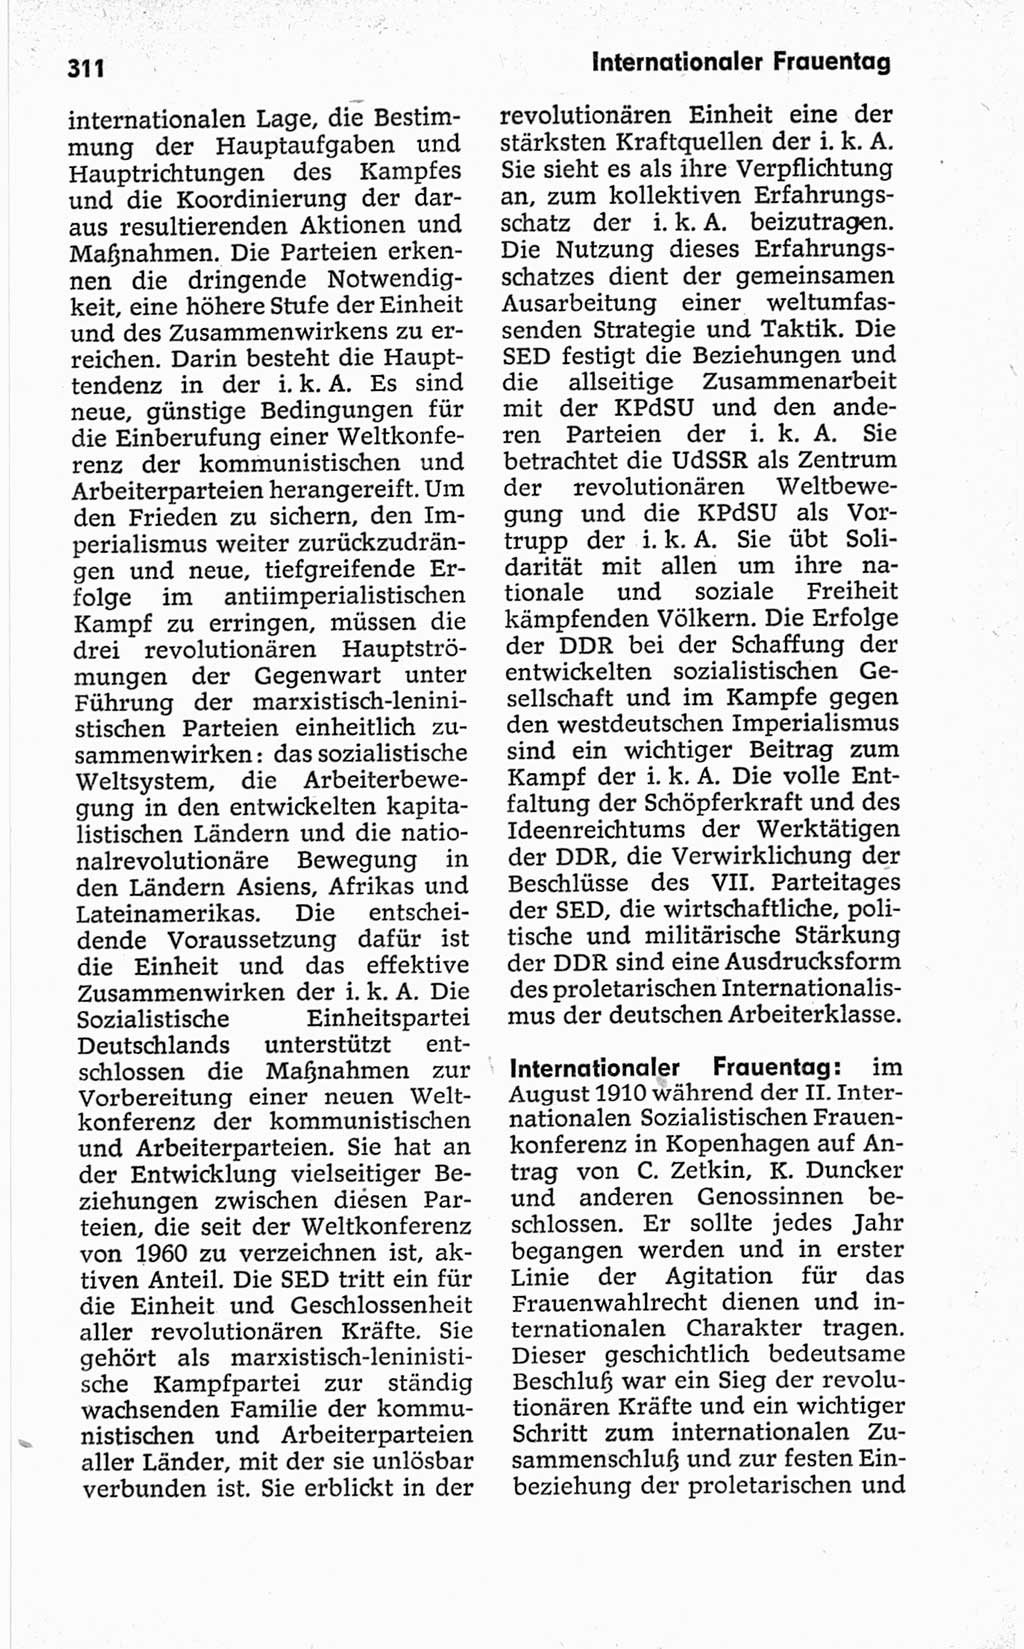 Kleines politisches Wörterbuch [Deutsche Demokratische Republik (DDR)] 1967, Seite 311 (Kl. pol. Wb. DDR 1967, S. 311)